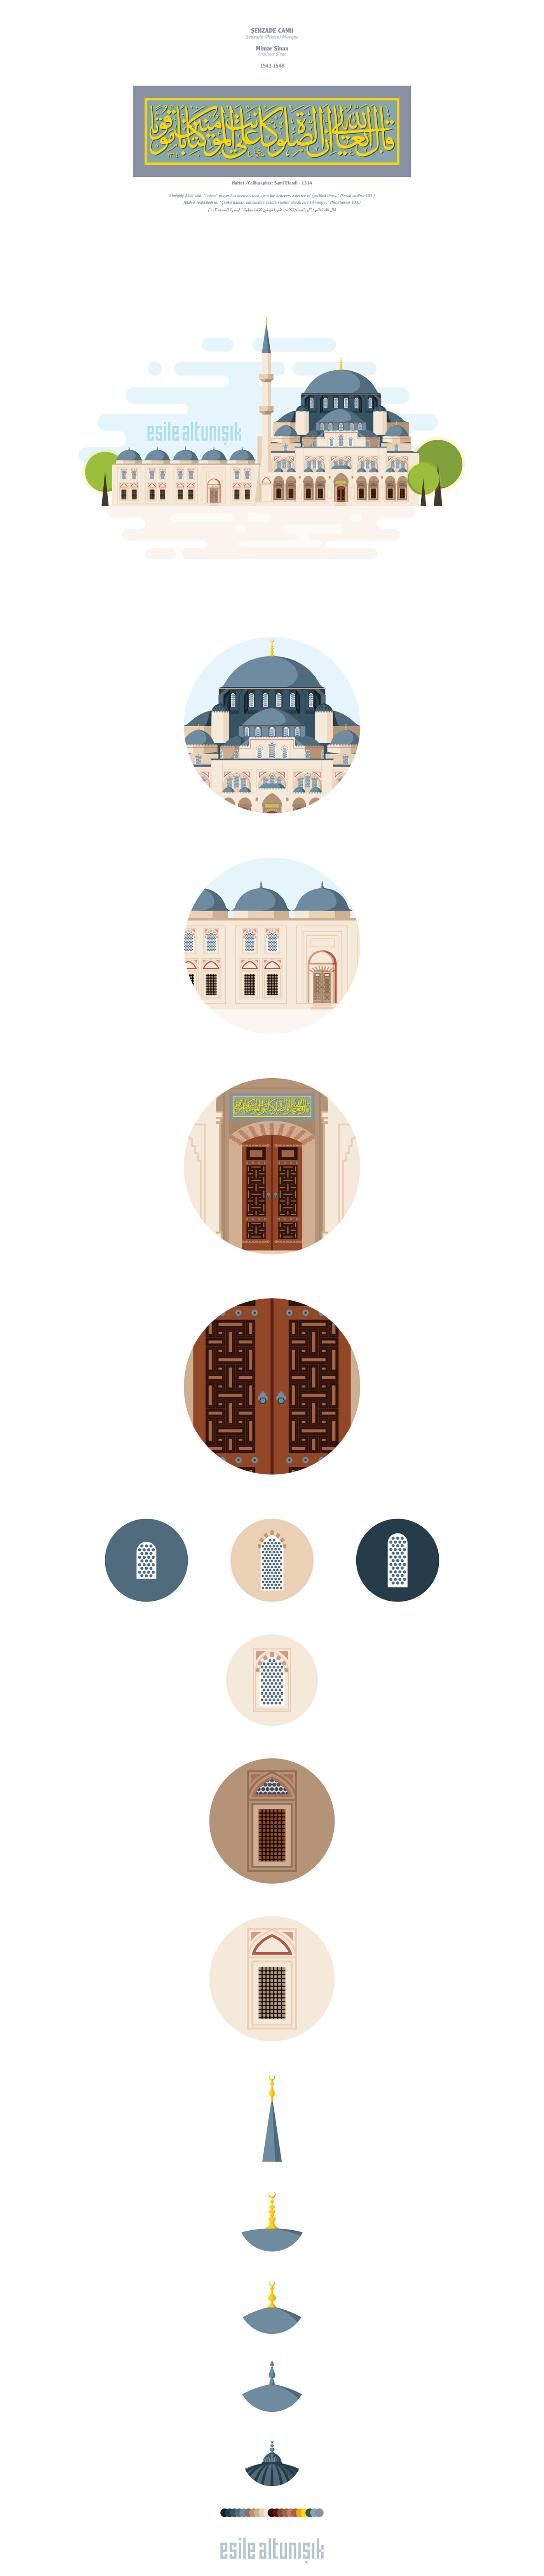 Şehzade Camii prince mosque mosque camii istanbul flat vector design ILLUSTRATION  esile altunışık